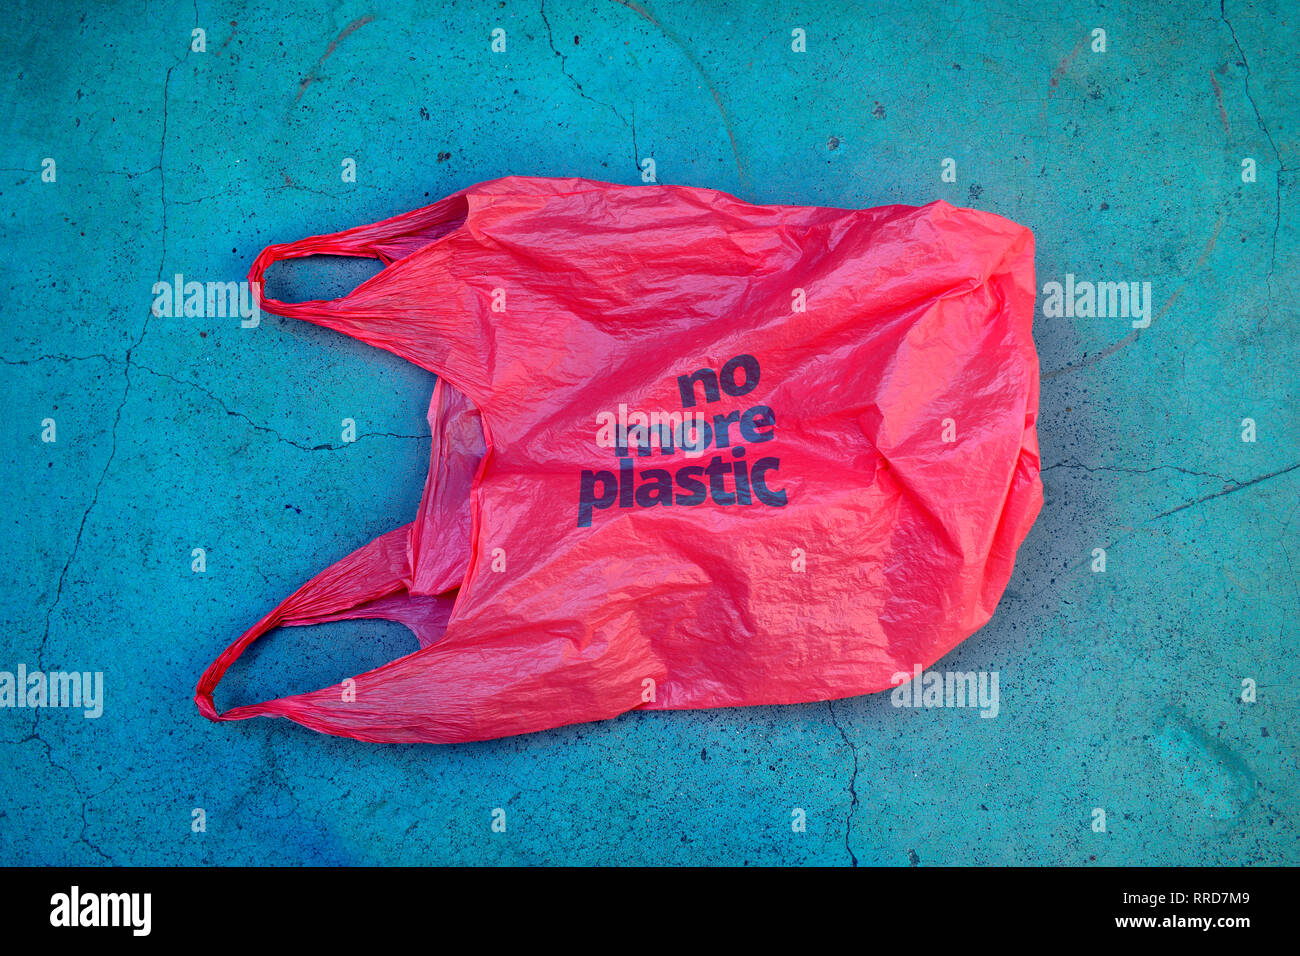 Kein Kunststoff. Umweltbewusstsein Rechtfertigung erschossen. Es zeigt eine rote Tüte Müll mit Motto nicht mehr aus Kunststoff. Stockfoto